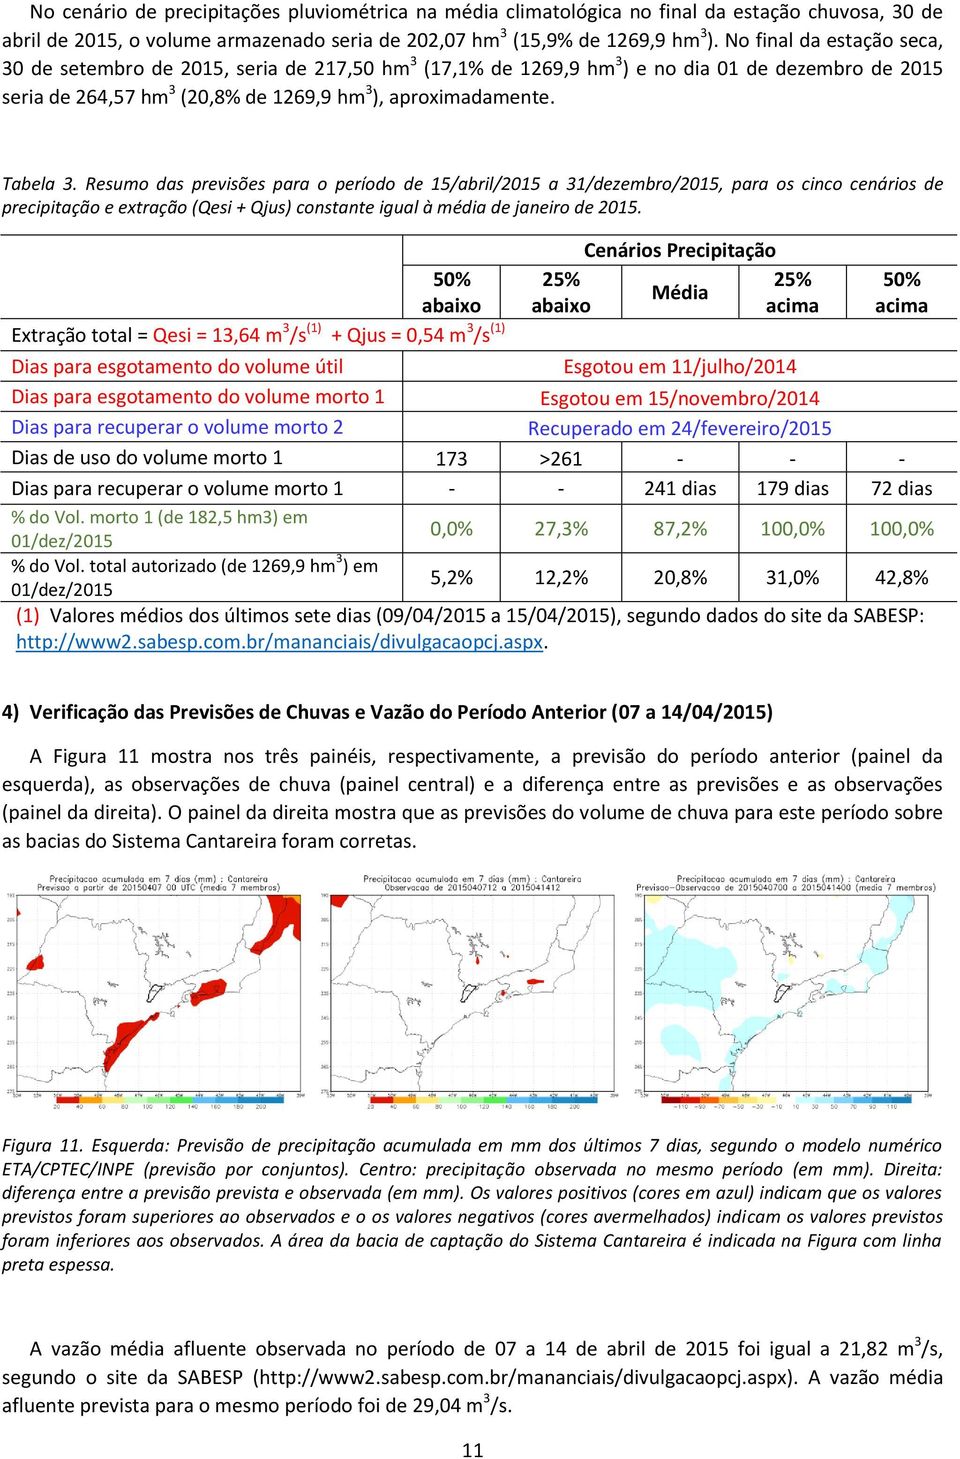 Resumo das previsões para o período de 15/abril/2015 a 31/dezembro/2015, para os cinco cenários de precipitação e extração (Qesi + Qjus) constante igual à média de janeiro de 2015.